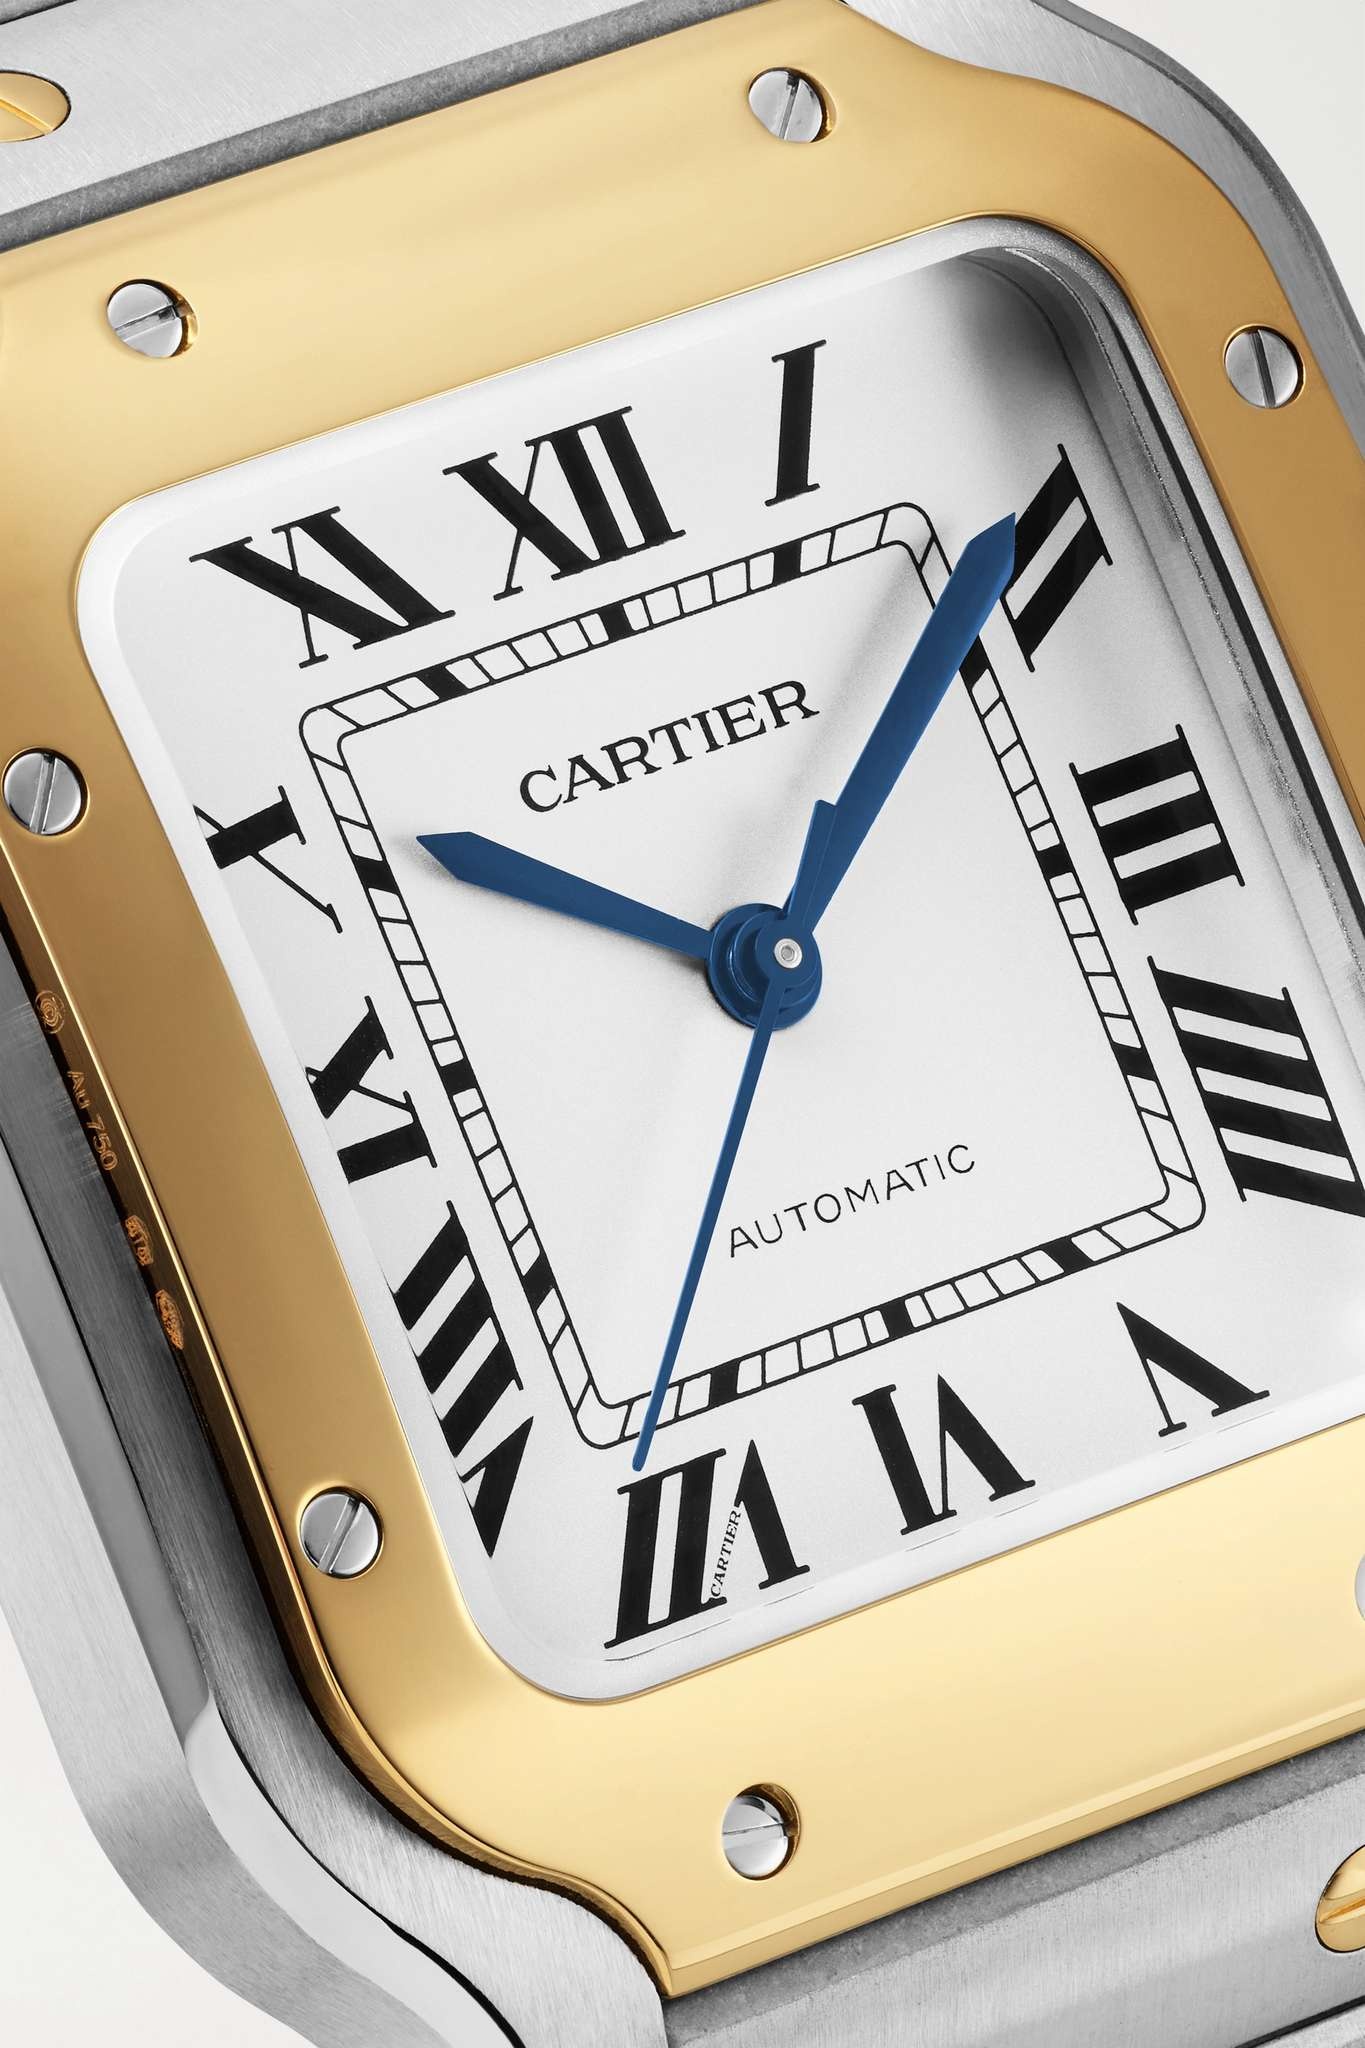 Santos de Cartier Automatic 35mm medium stainless steel and 18-karat gold watch - 5